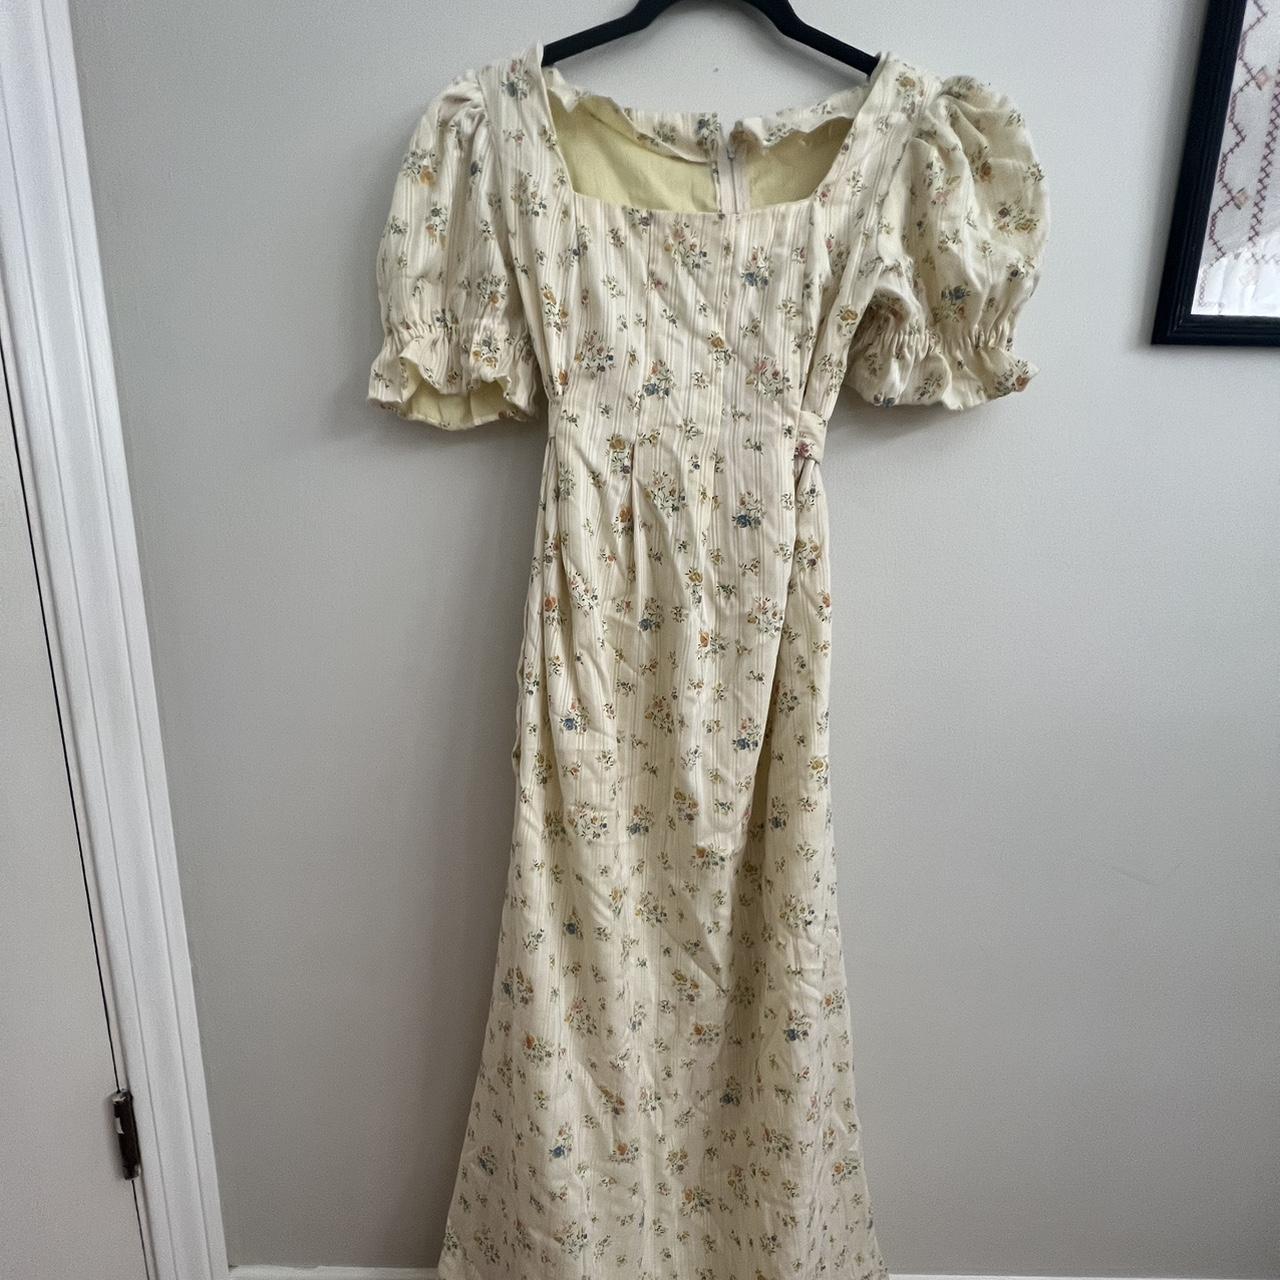 Handmade Vintage 1970s Prairie/Regency Dress • Size... - Depop